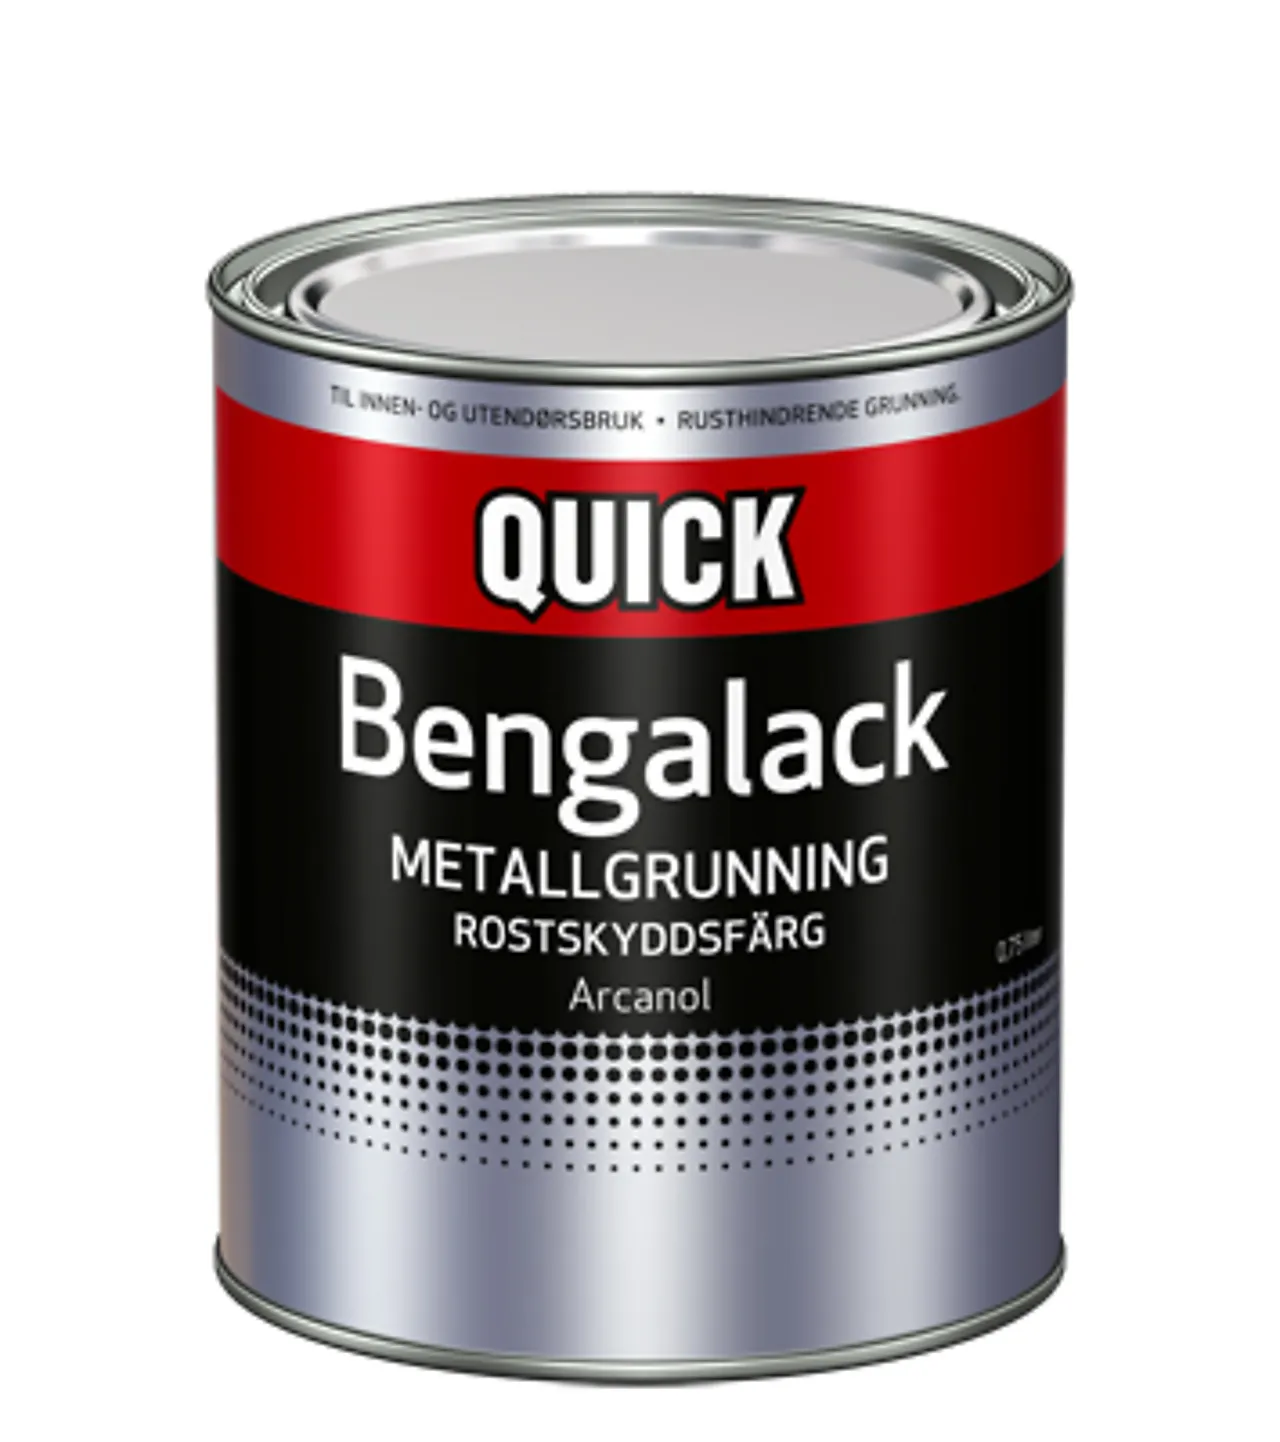 Bengalack metallgrunning 331 0,75 liter